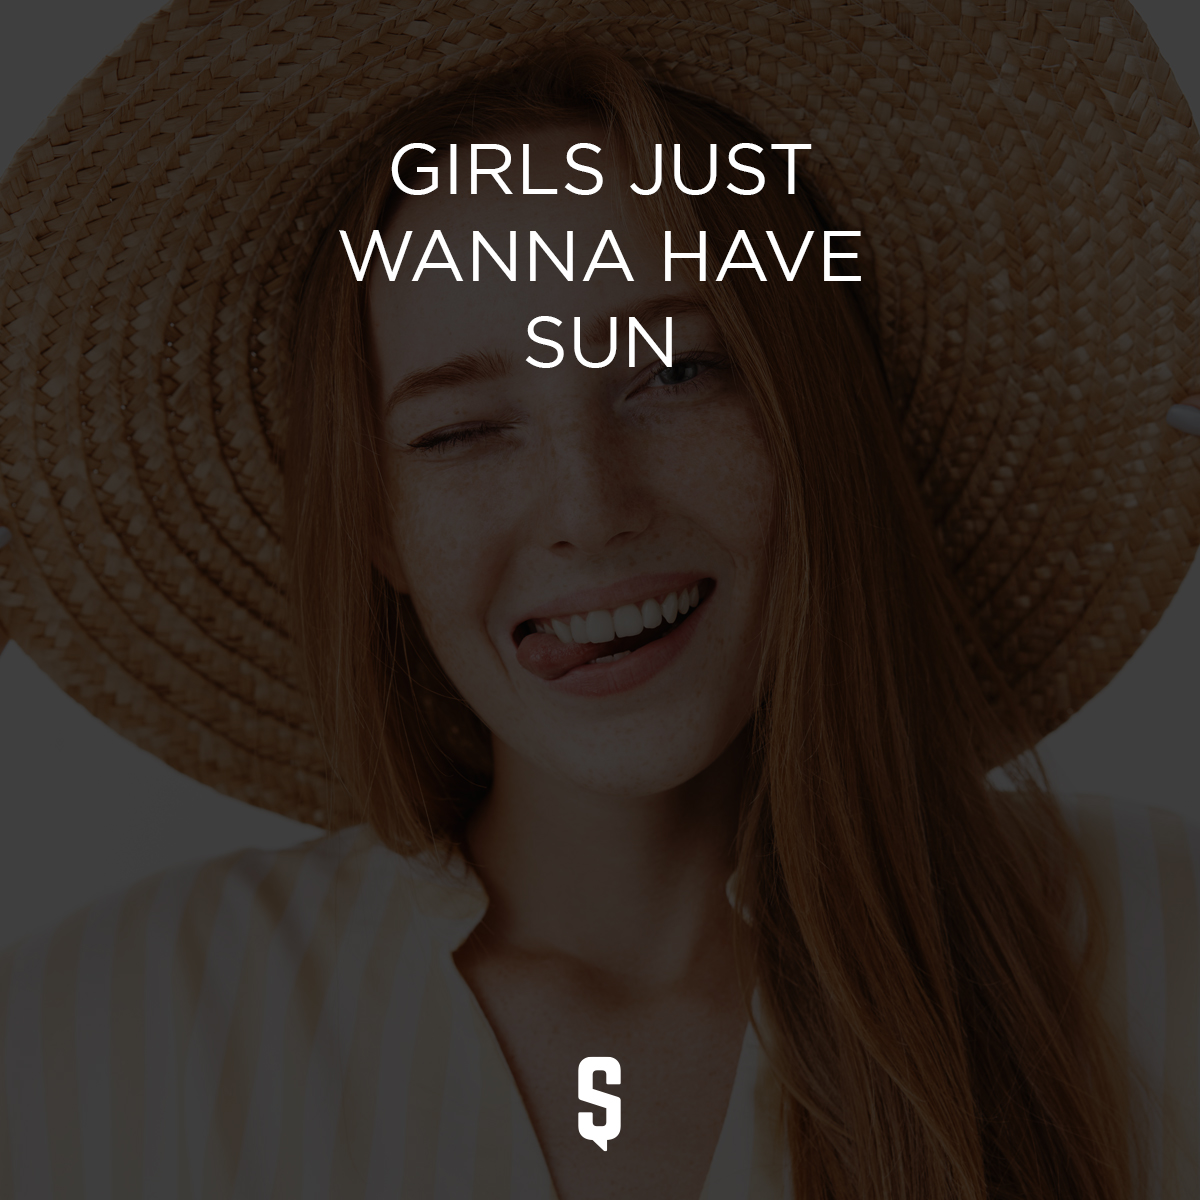 Girls just wanna have sun.